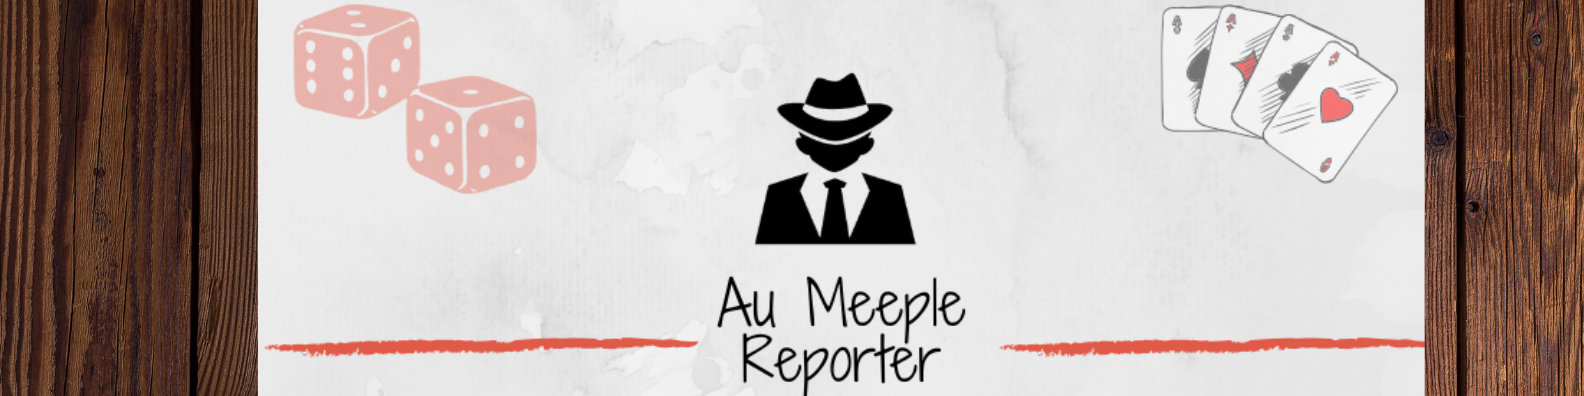 Meeple reporter